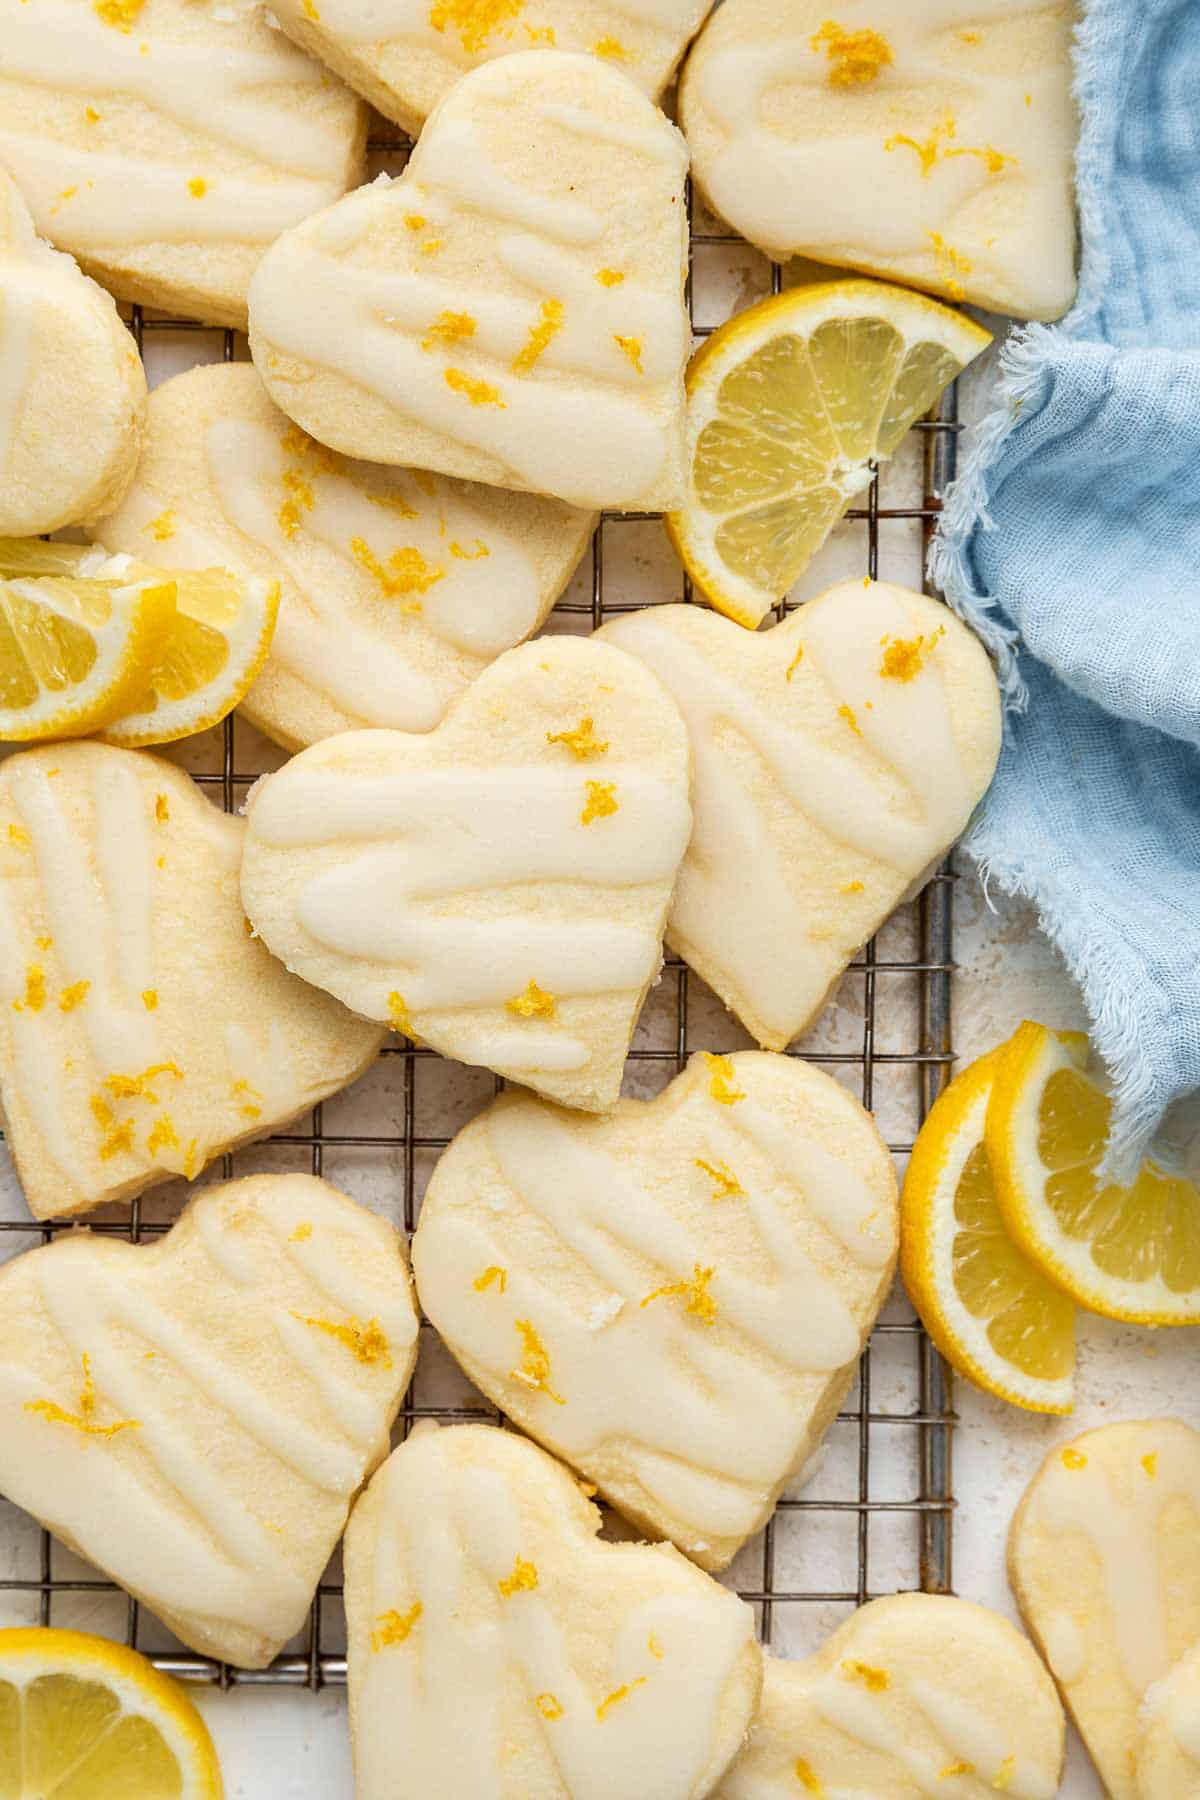 Heart lemon shortbread cookies with lemon zest and a blue towel.